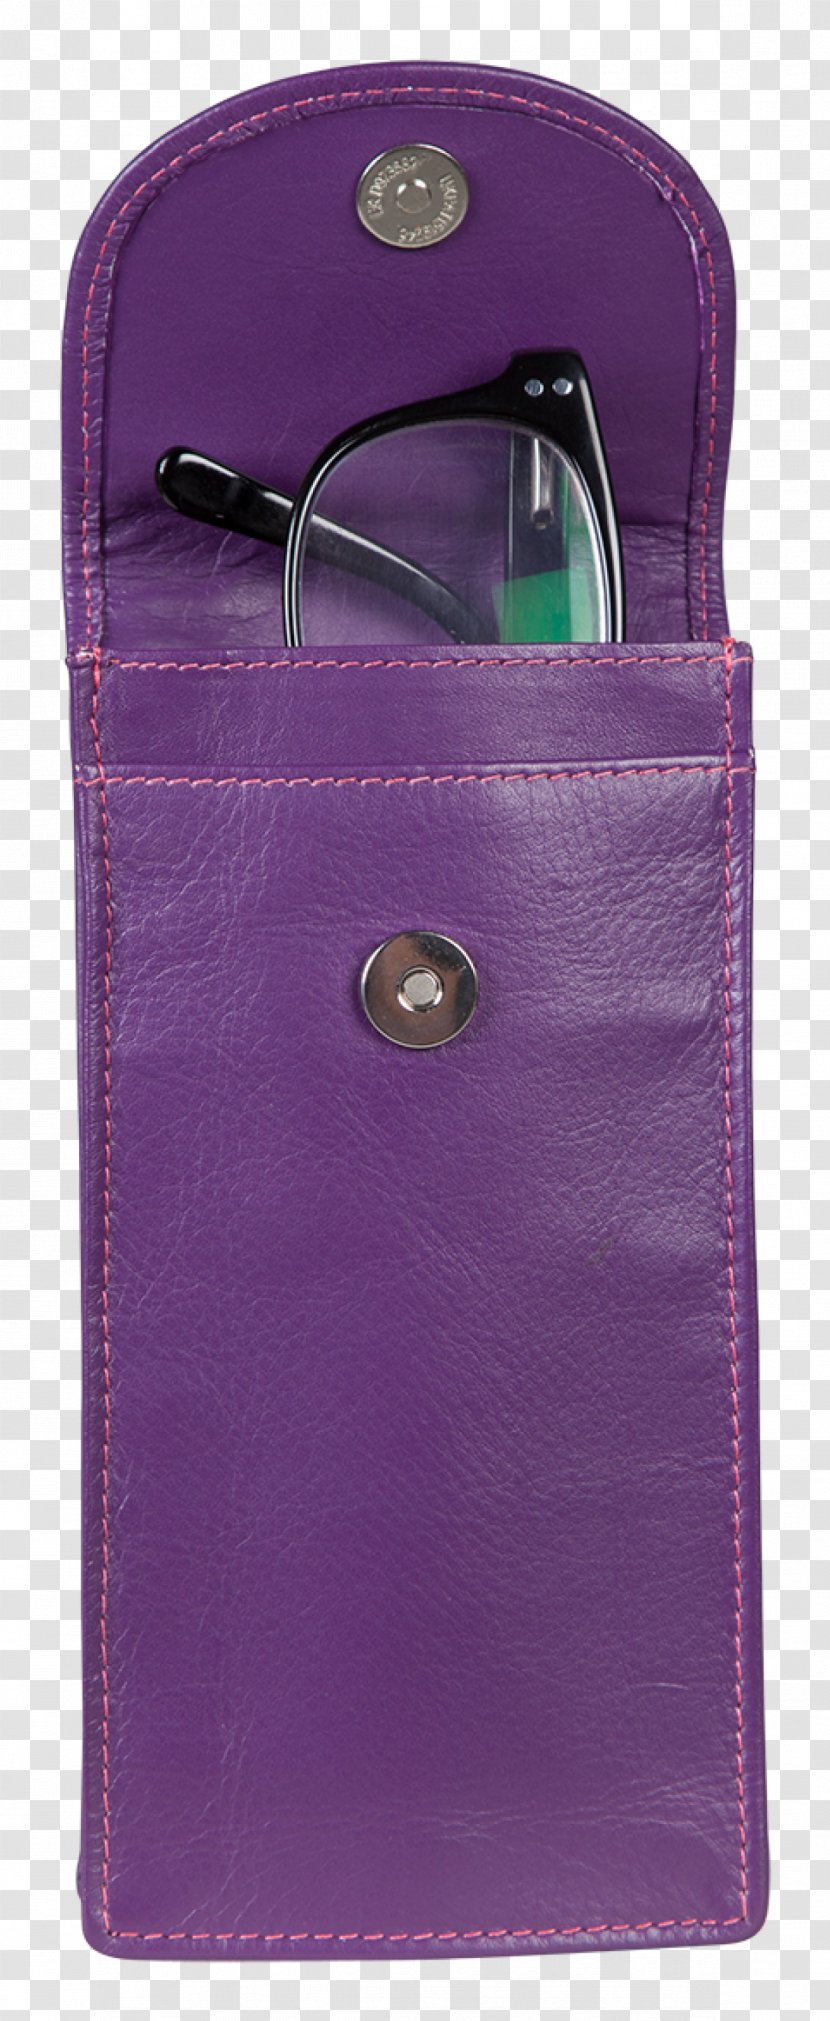 Handbag Pocket Glasses Wallet Leather - Wholesale - Glass Case Transparent PNG